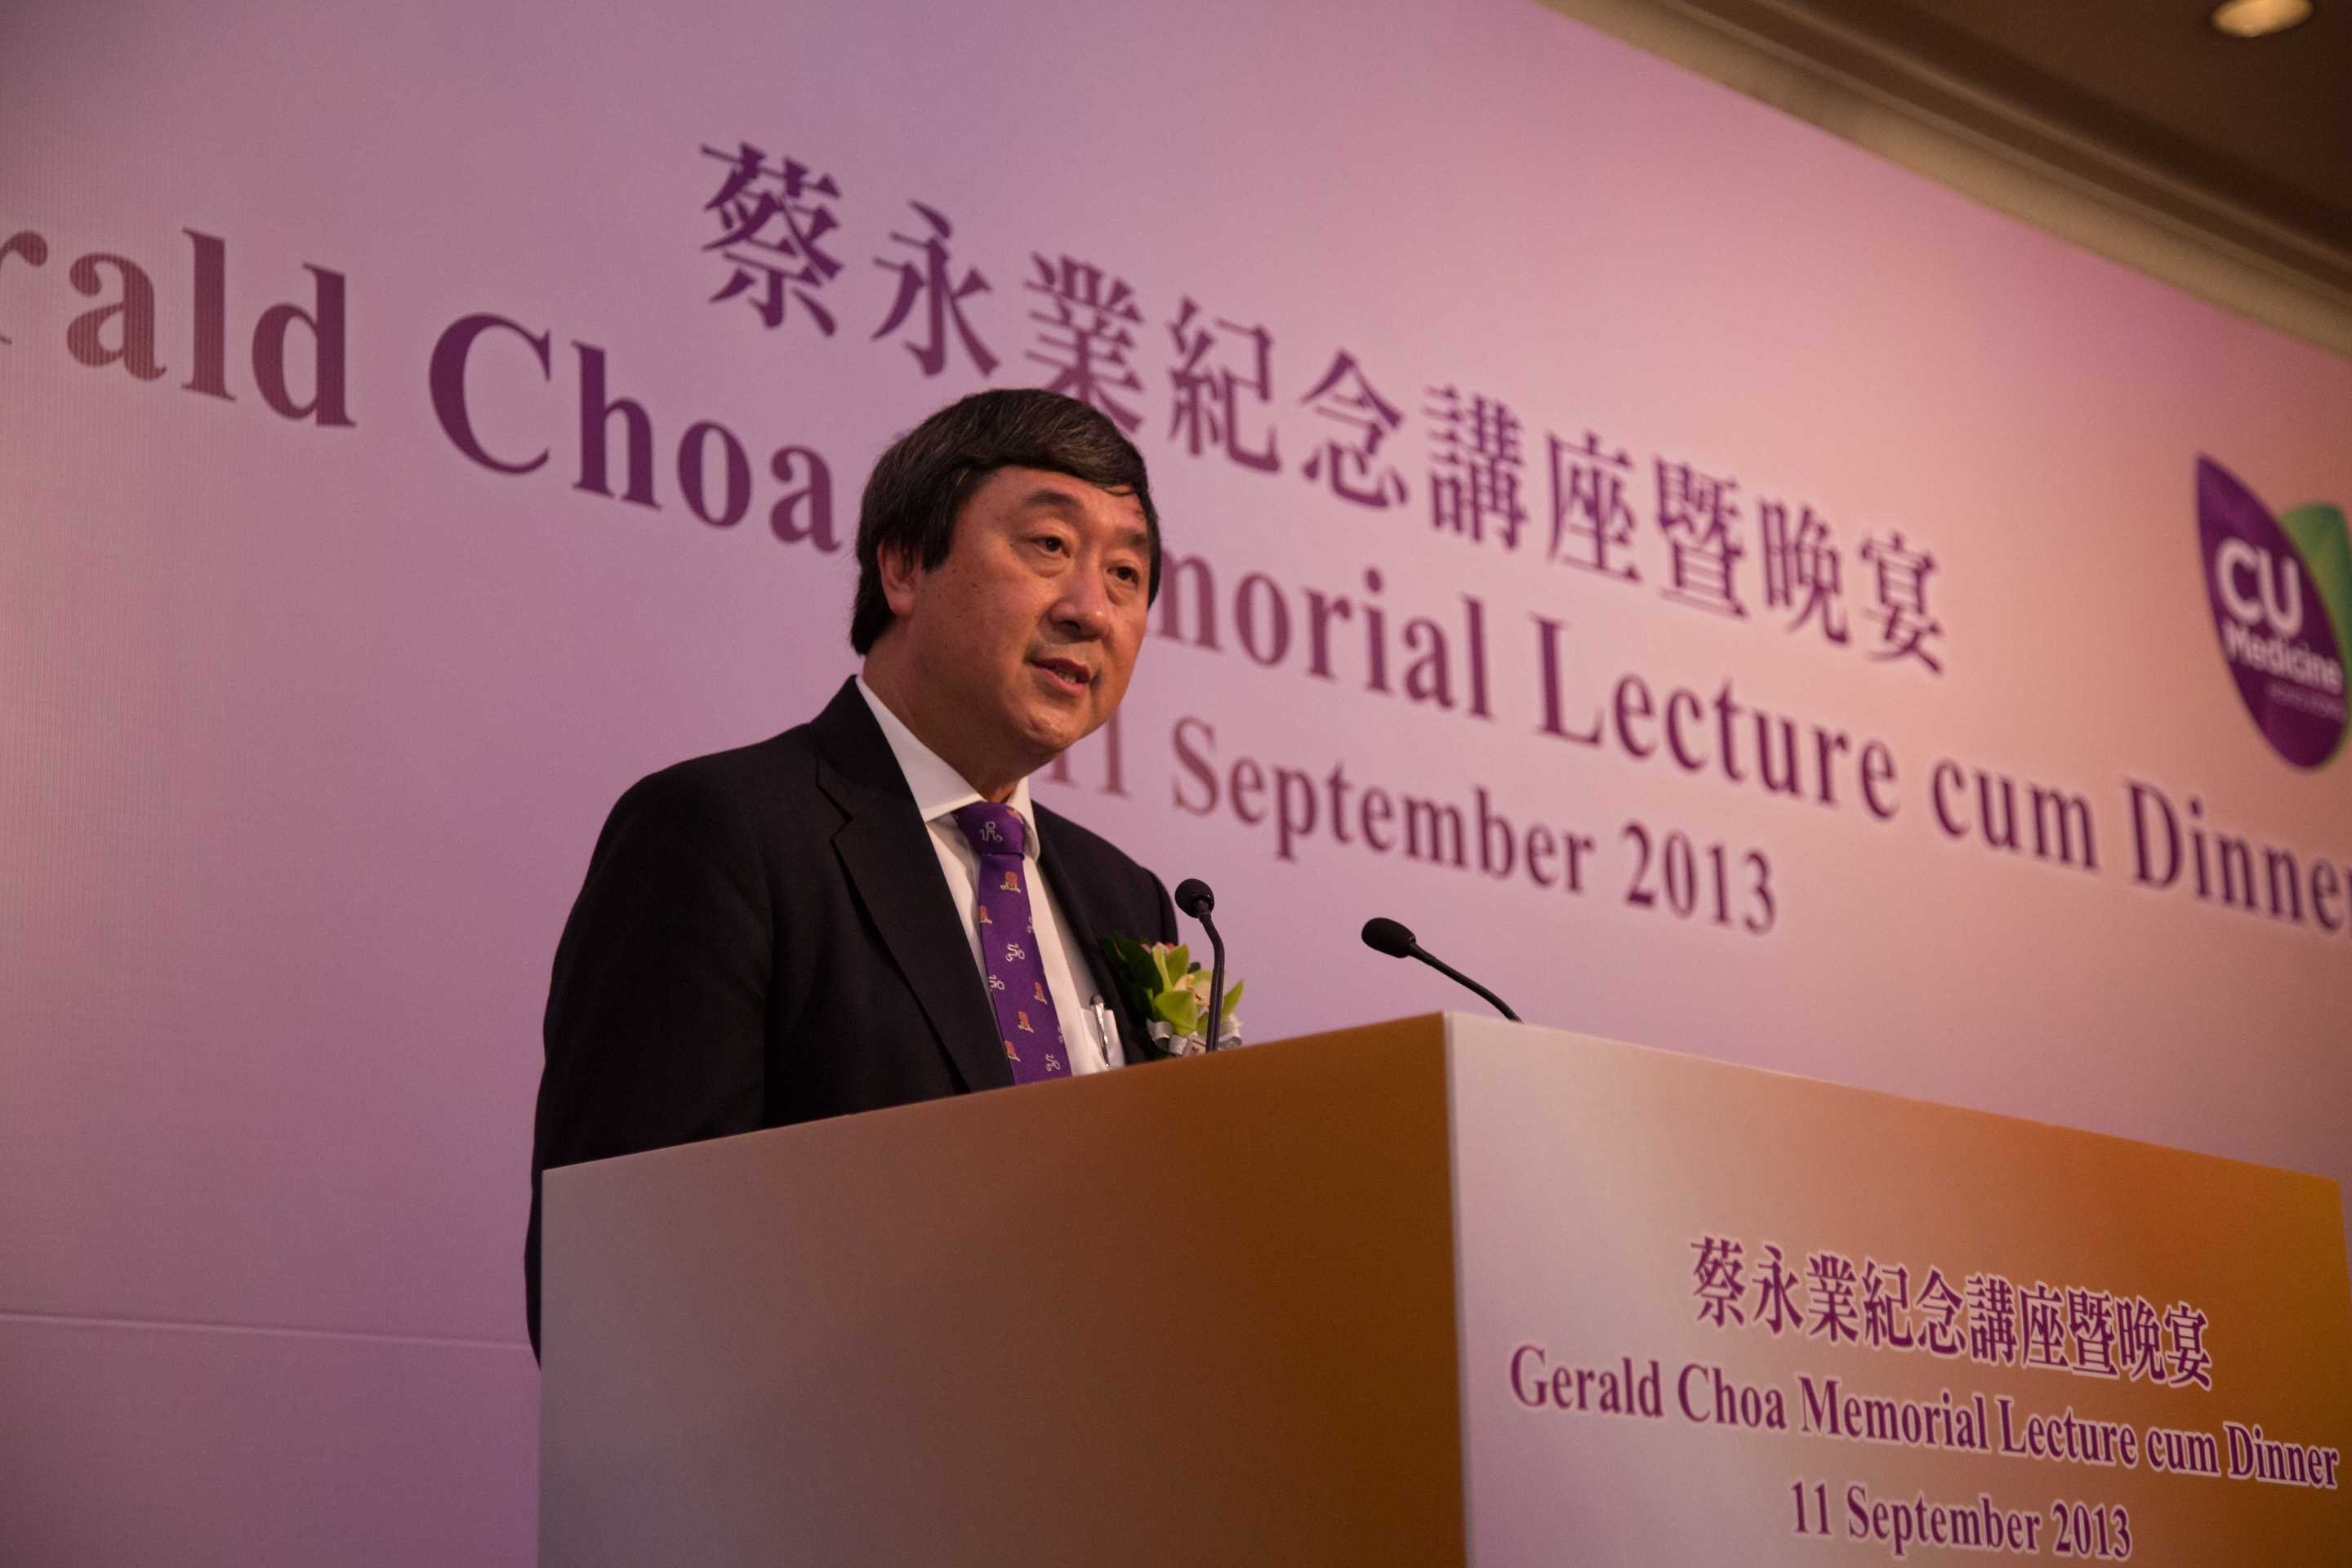 中大校長沈祖堯教授表示「蔡永業紀念講座」的成立是為了紀念蔡教授對中大醫學院的深遠貢獻。